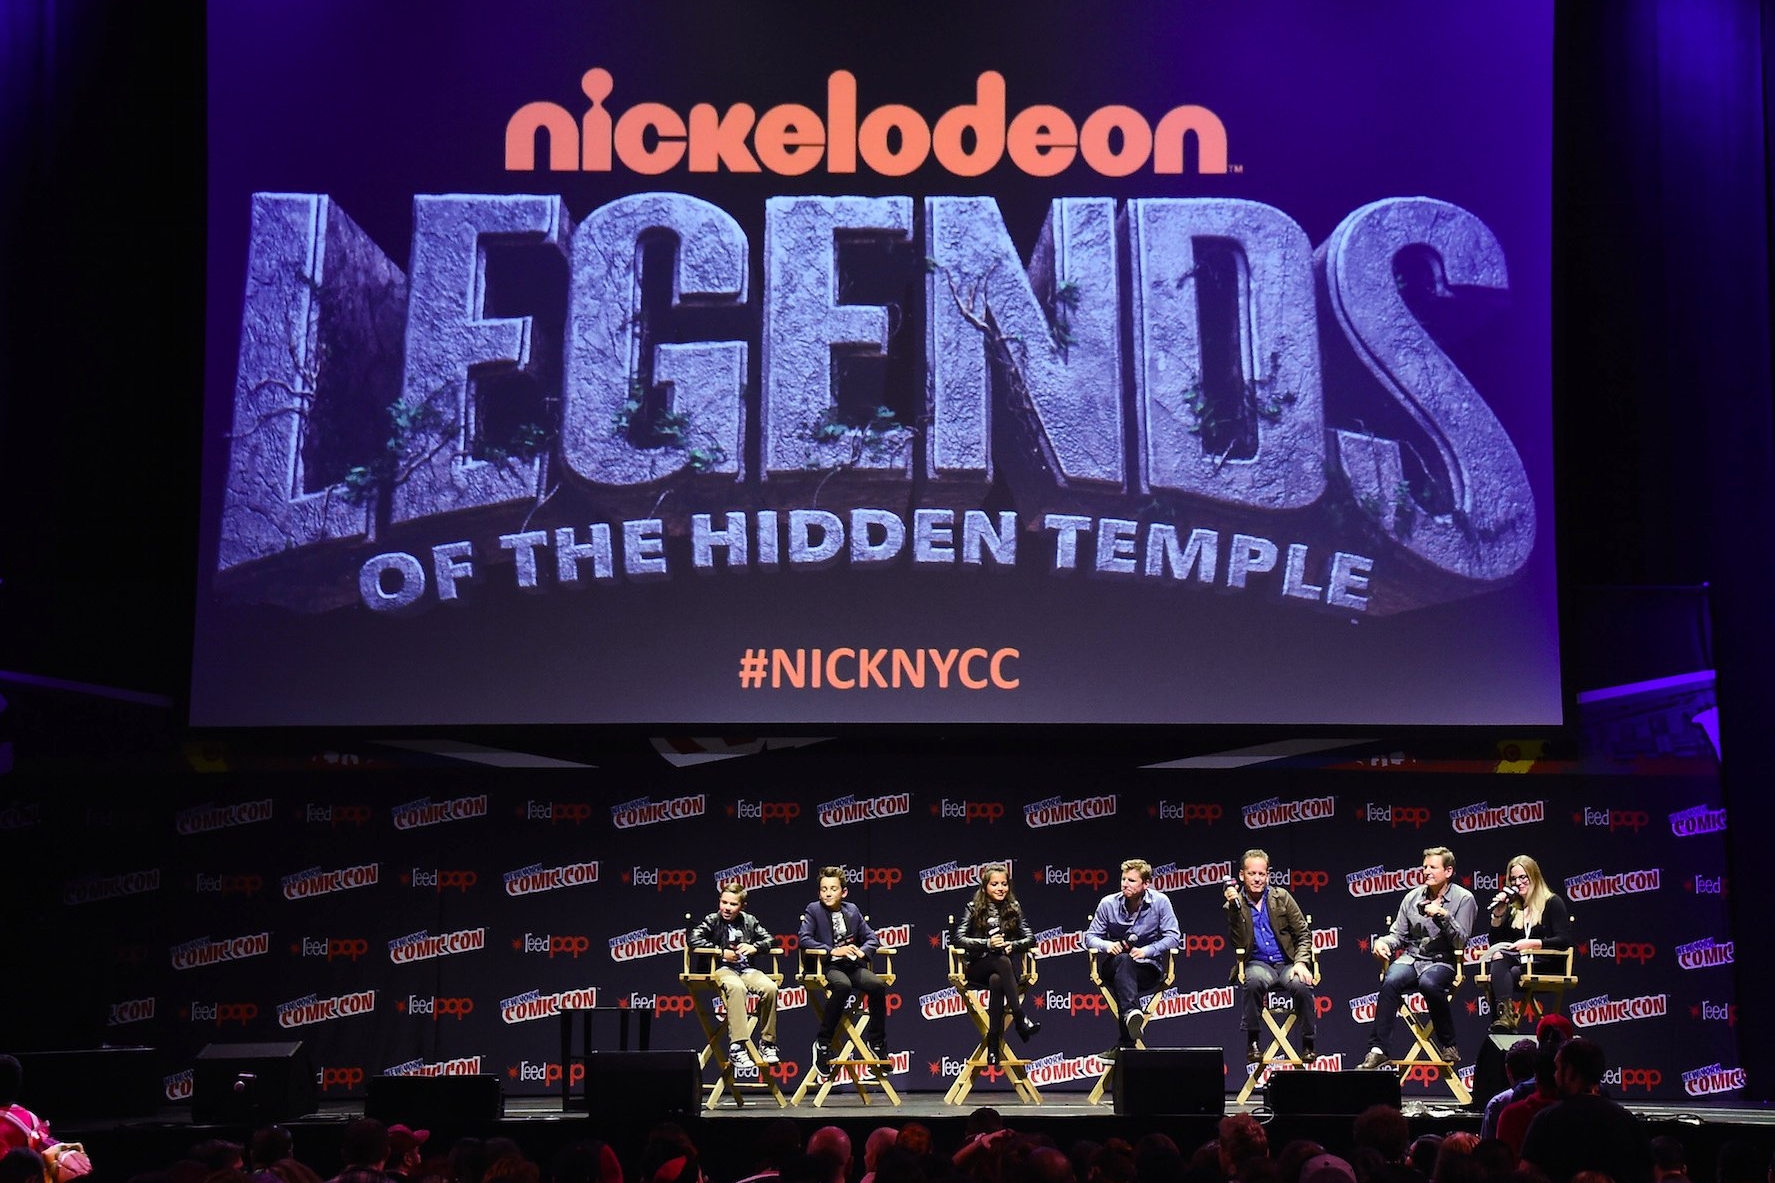 nickelodeon legends of the hidden temple new york comic con 2016.jpg